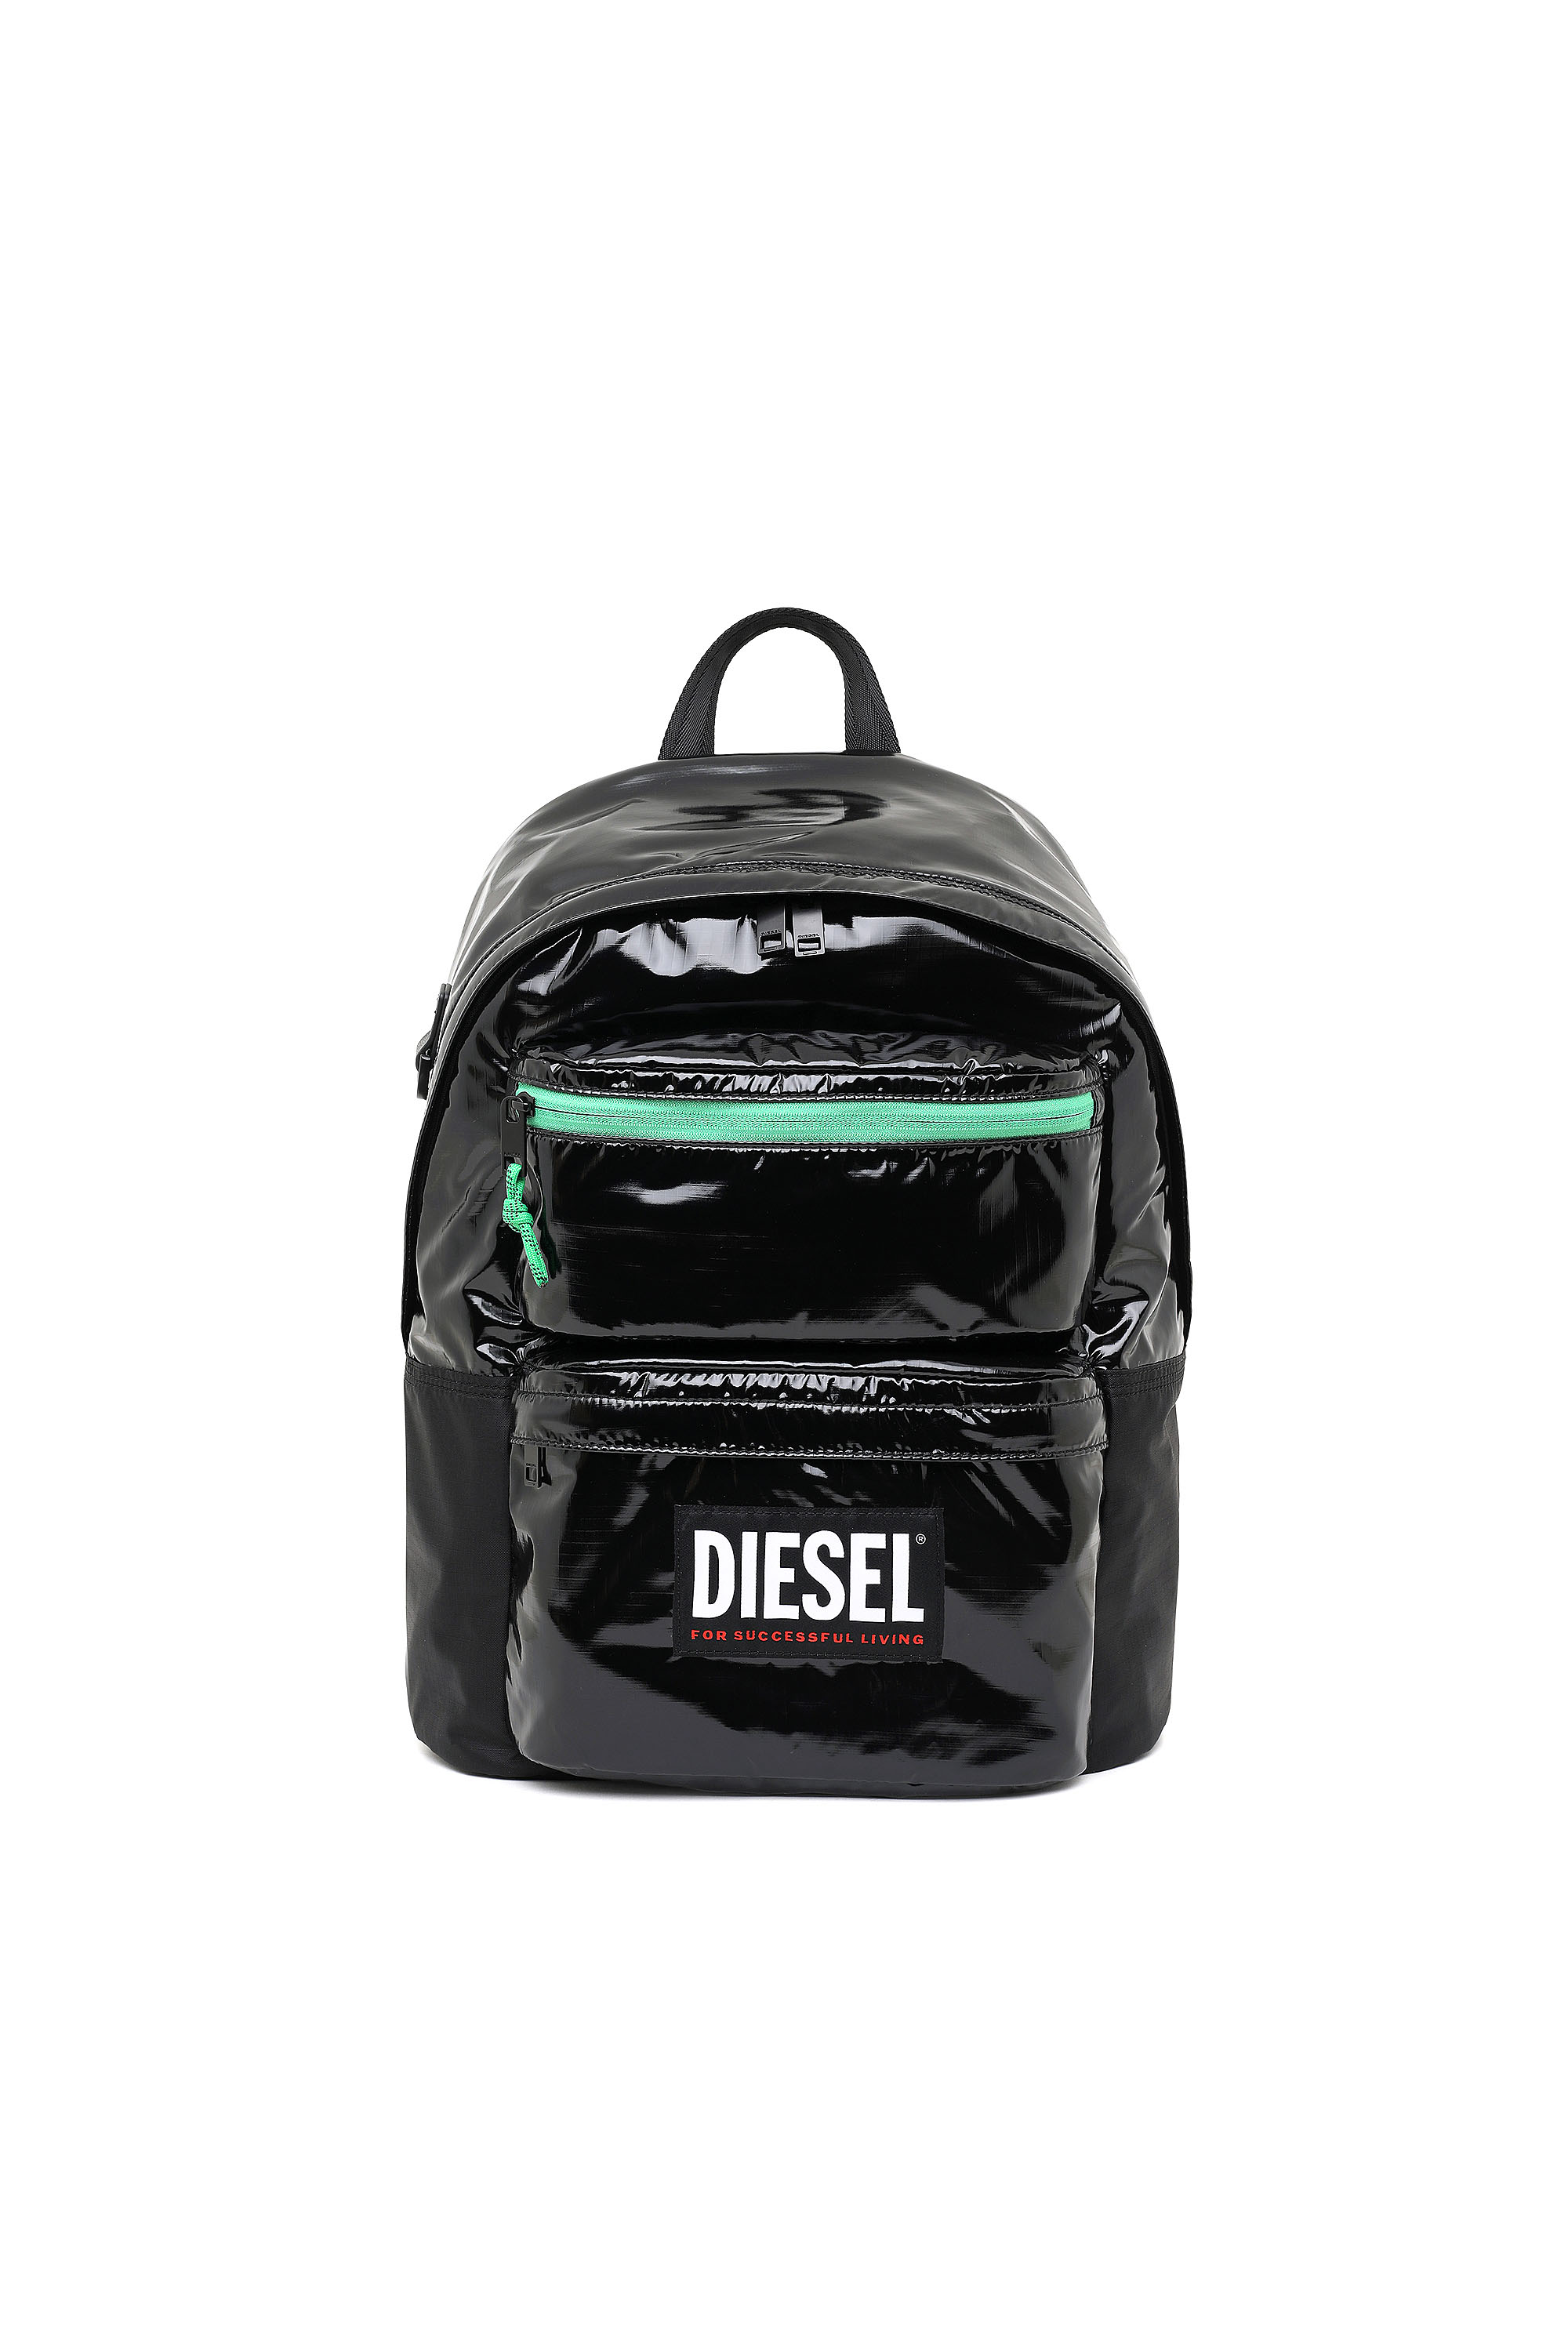 Diesel - RODYO PAT, Black/Green - Image 1